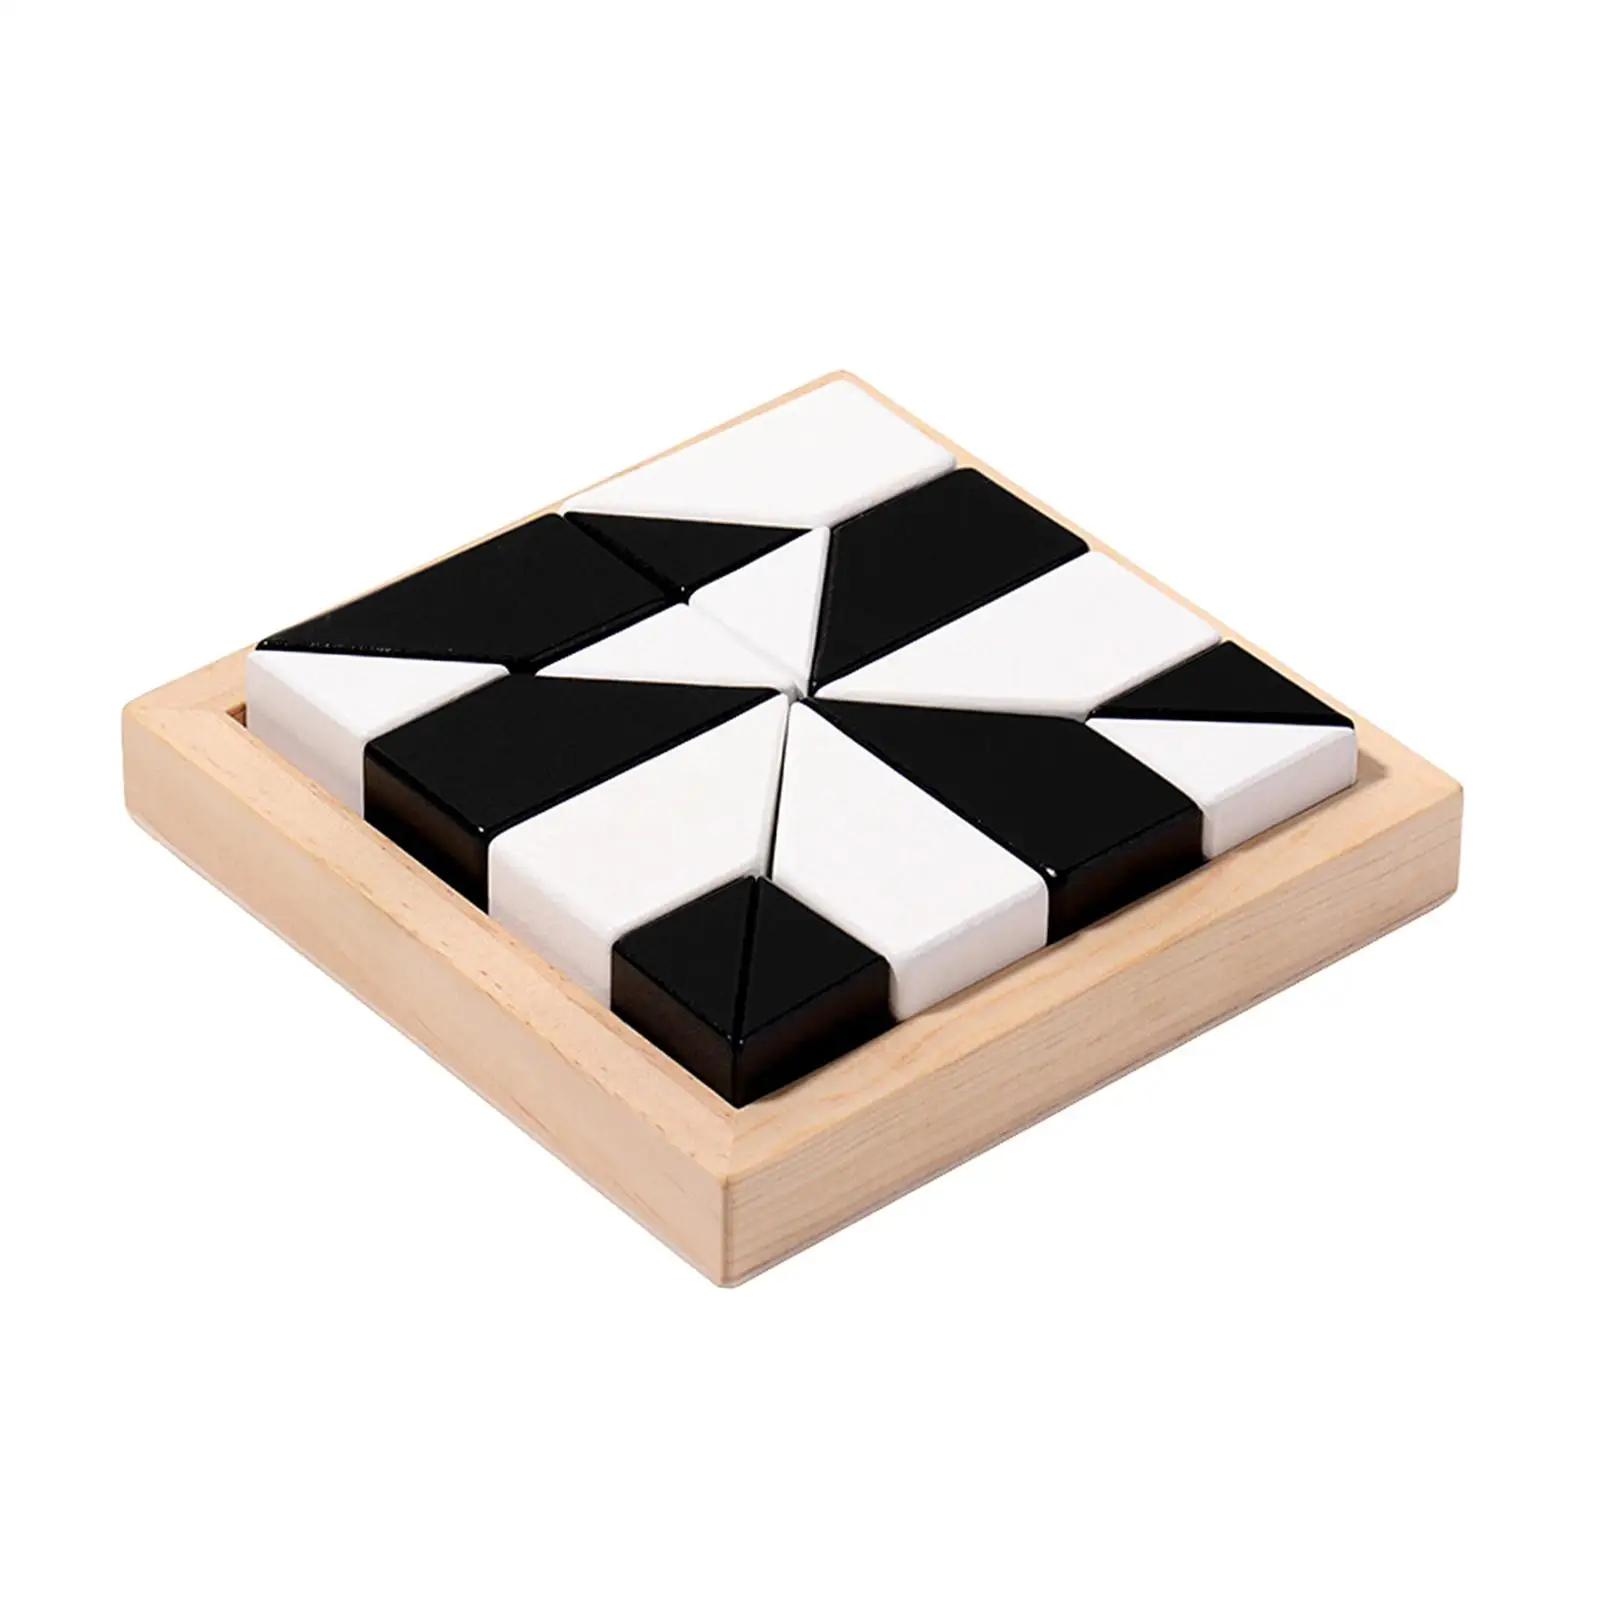 

Wooden Blocks Puzzle Geometric Brain Teaser Stem Birthday Gifts IQ Montessori Toy for Preschool Kindergarten Children